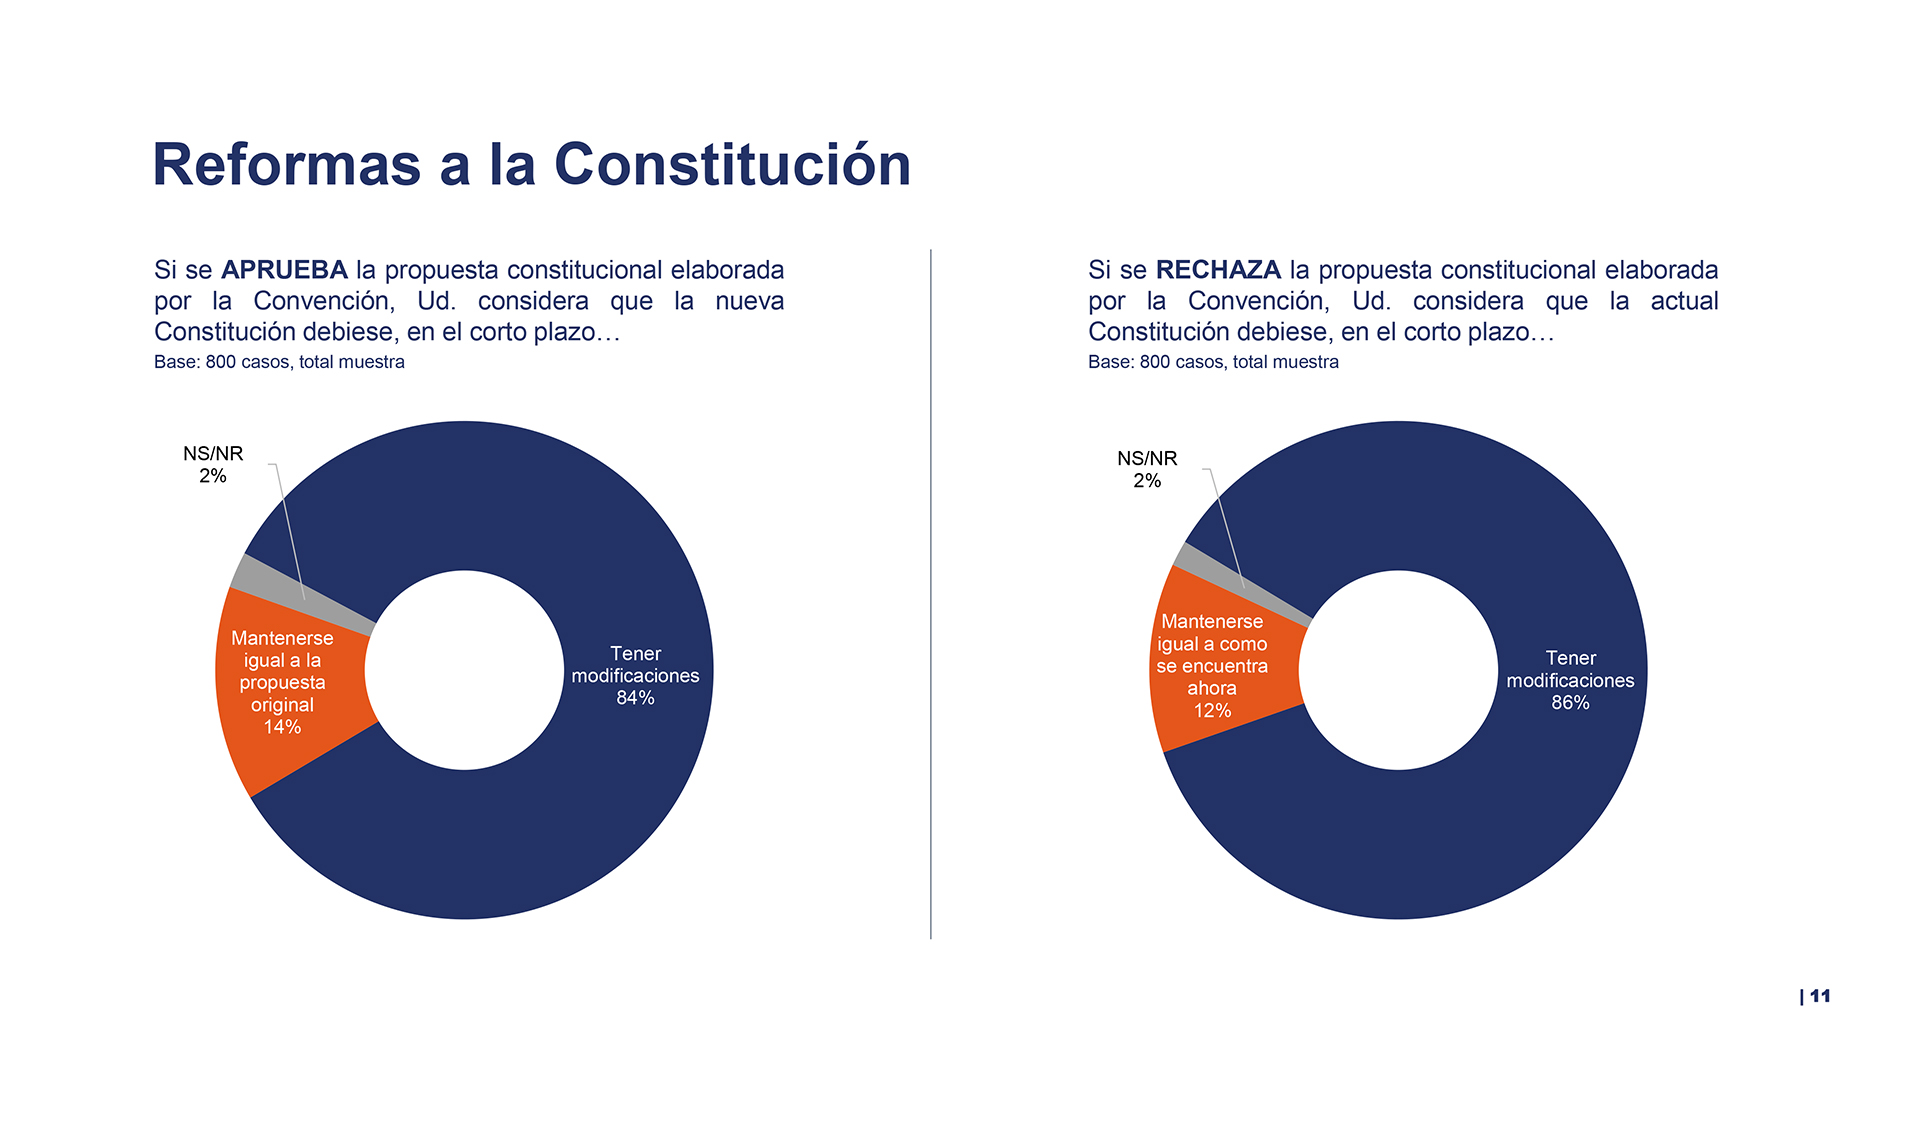 Más del 80% de los encuestados consideran que la Constitución debe tener modificaciones, más allá del resultado del plebiscito 